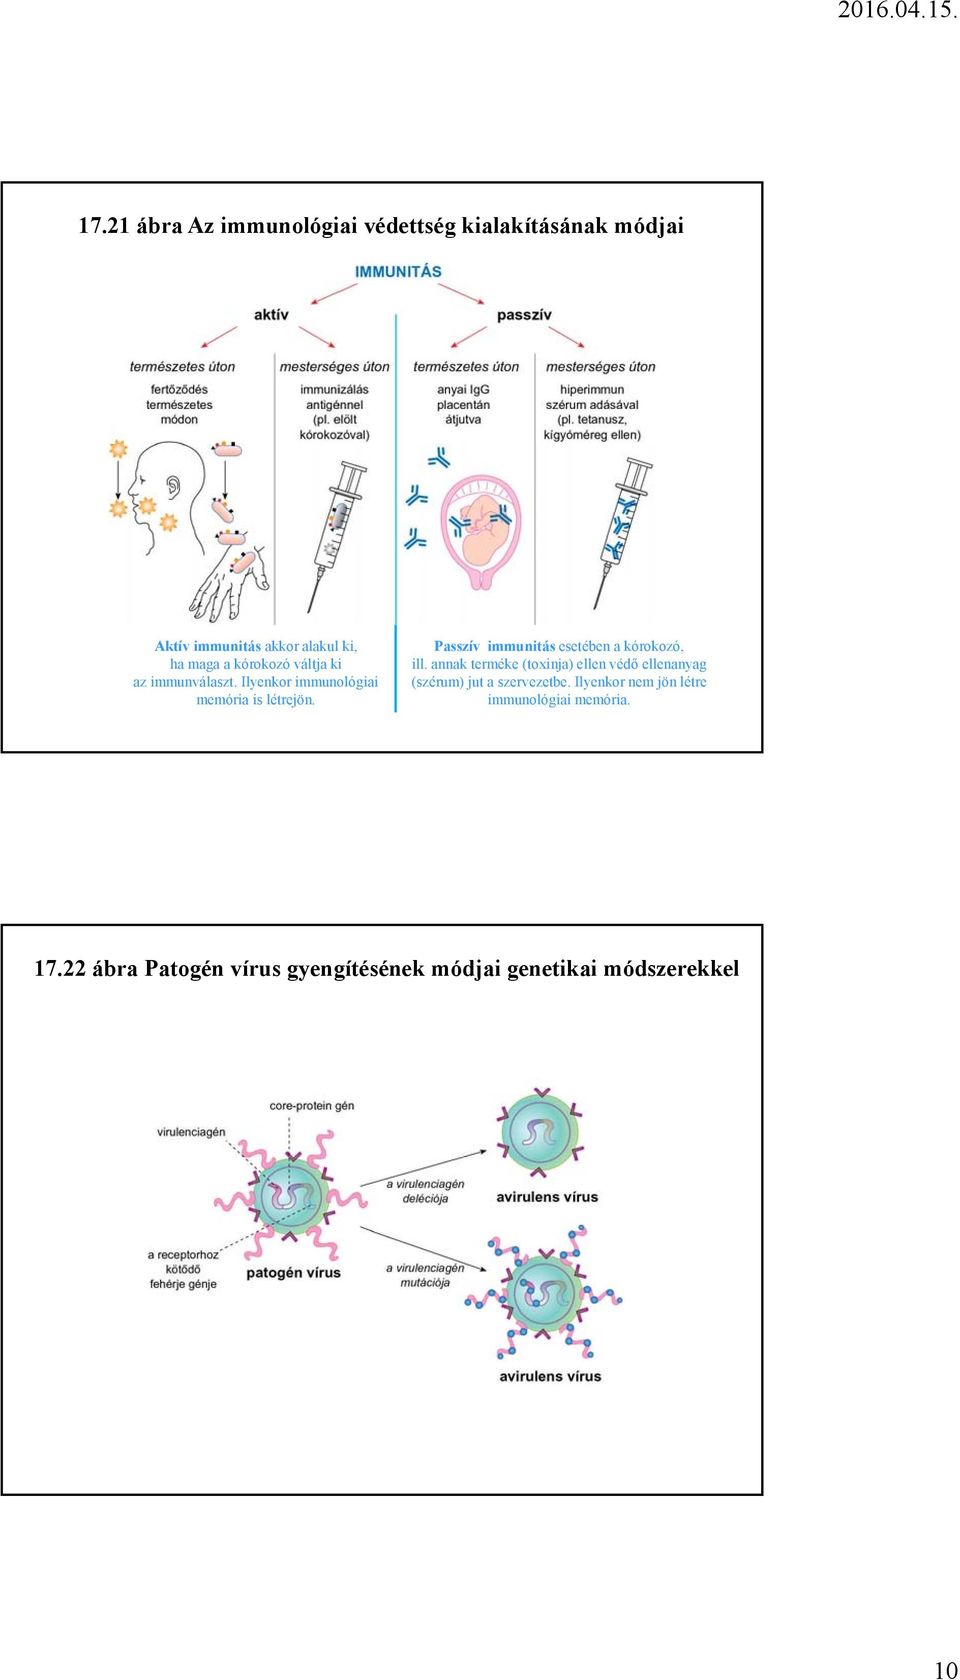 Kórokozó paraziták és immunitás bevezetése - Tumorellenes immunválasz kiváltása kórokozókkal